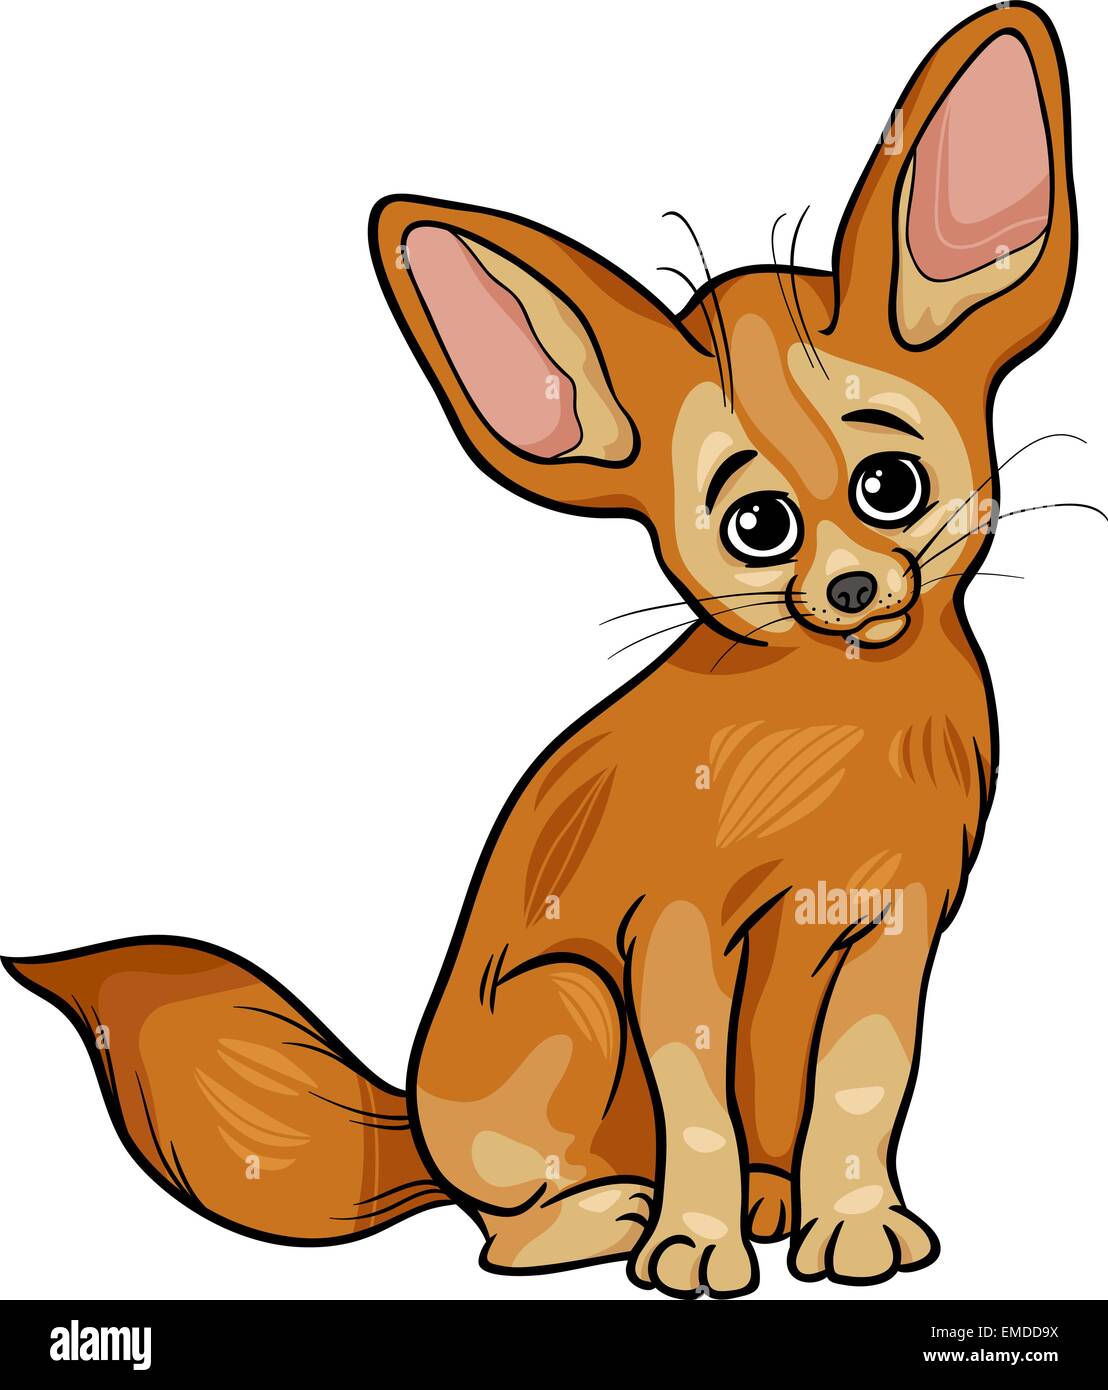 fennec fox animal cartoon illustration Stock Vector